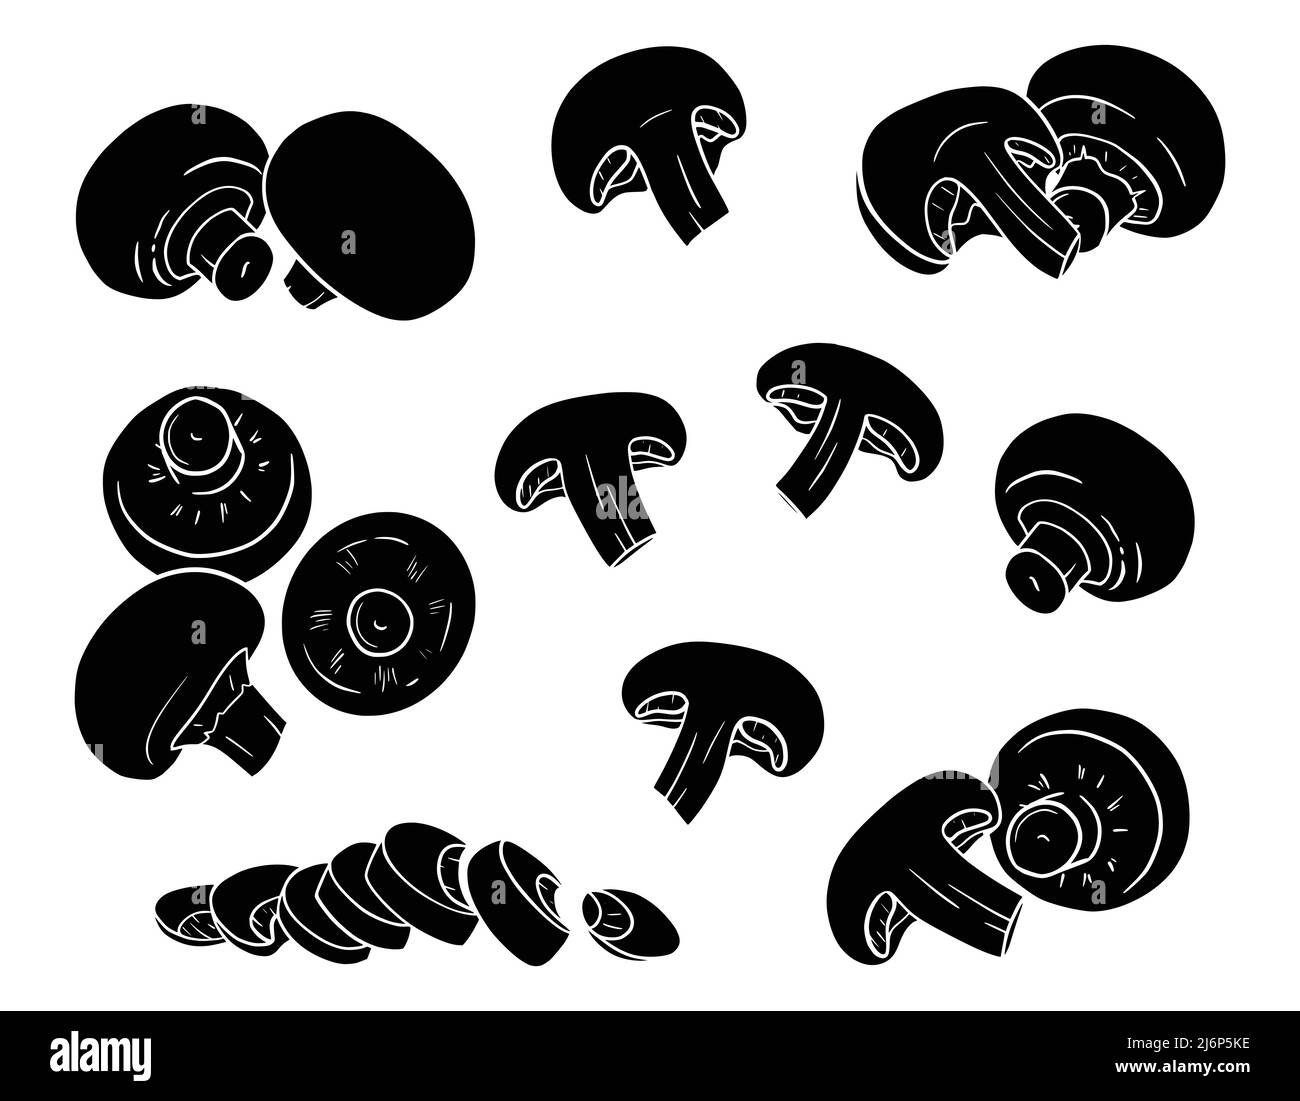 Champignons disegnati a mano. Silhouette di funghi isolati su sfondo bianco. Interi, tagliati, tagliati, tagliati a fette, a metà. Illustrazione vettoriale in bianco e nero per fo Illustrazione Vettoriale